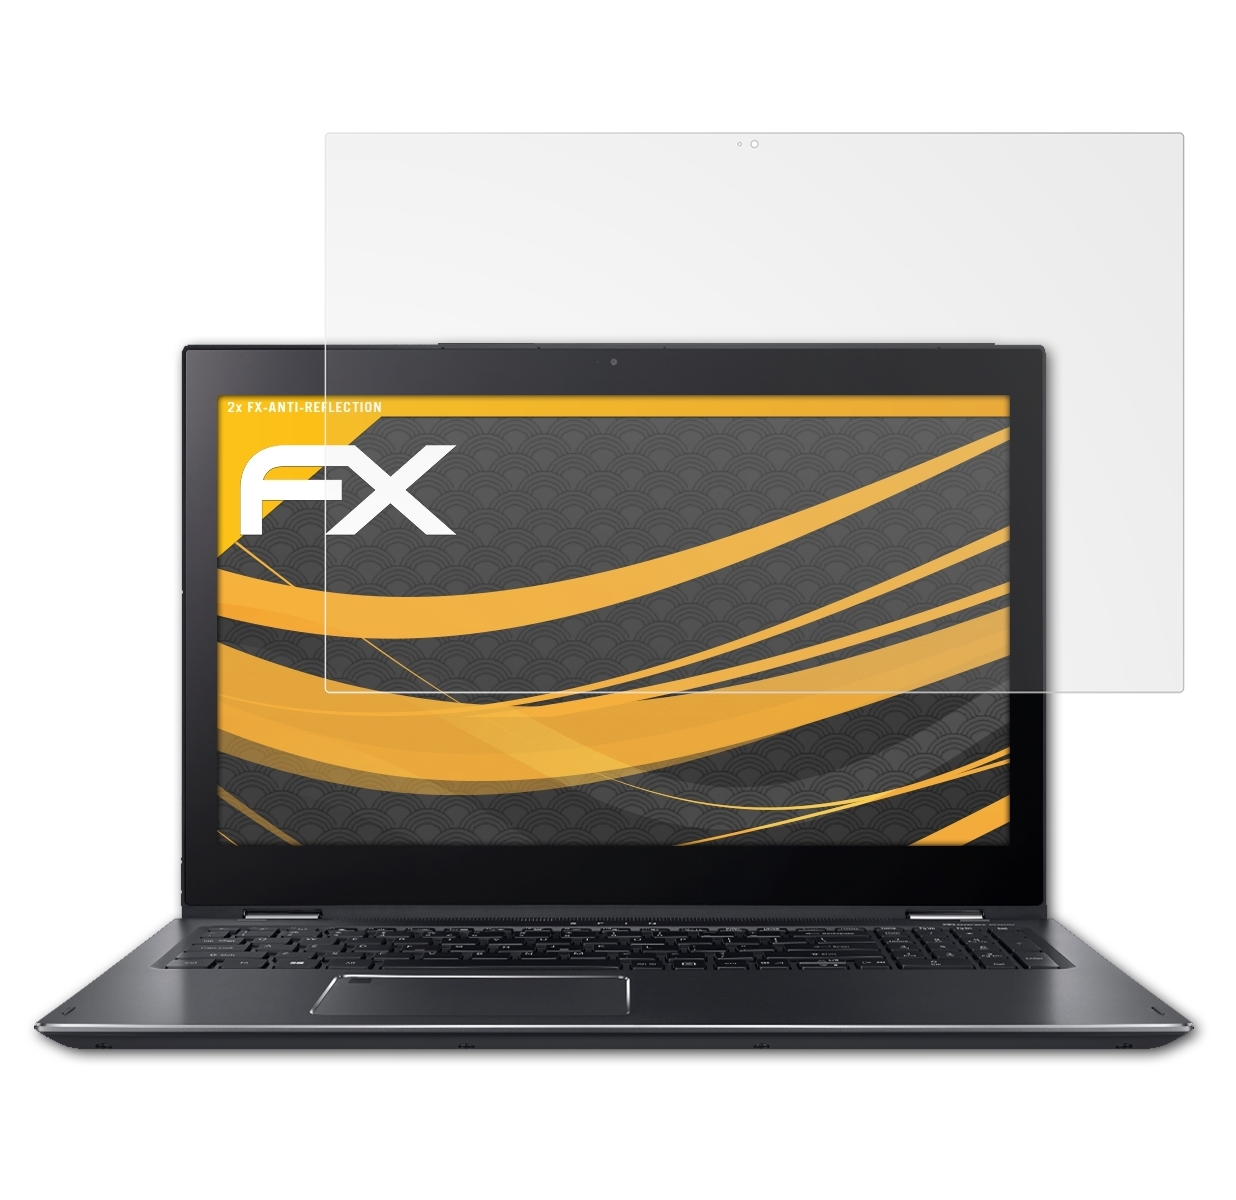 2x Spin ATFOLIX (15,6 Acer FX-Antireflex 5 SP515-51 Displayschutz(für inch))